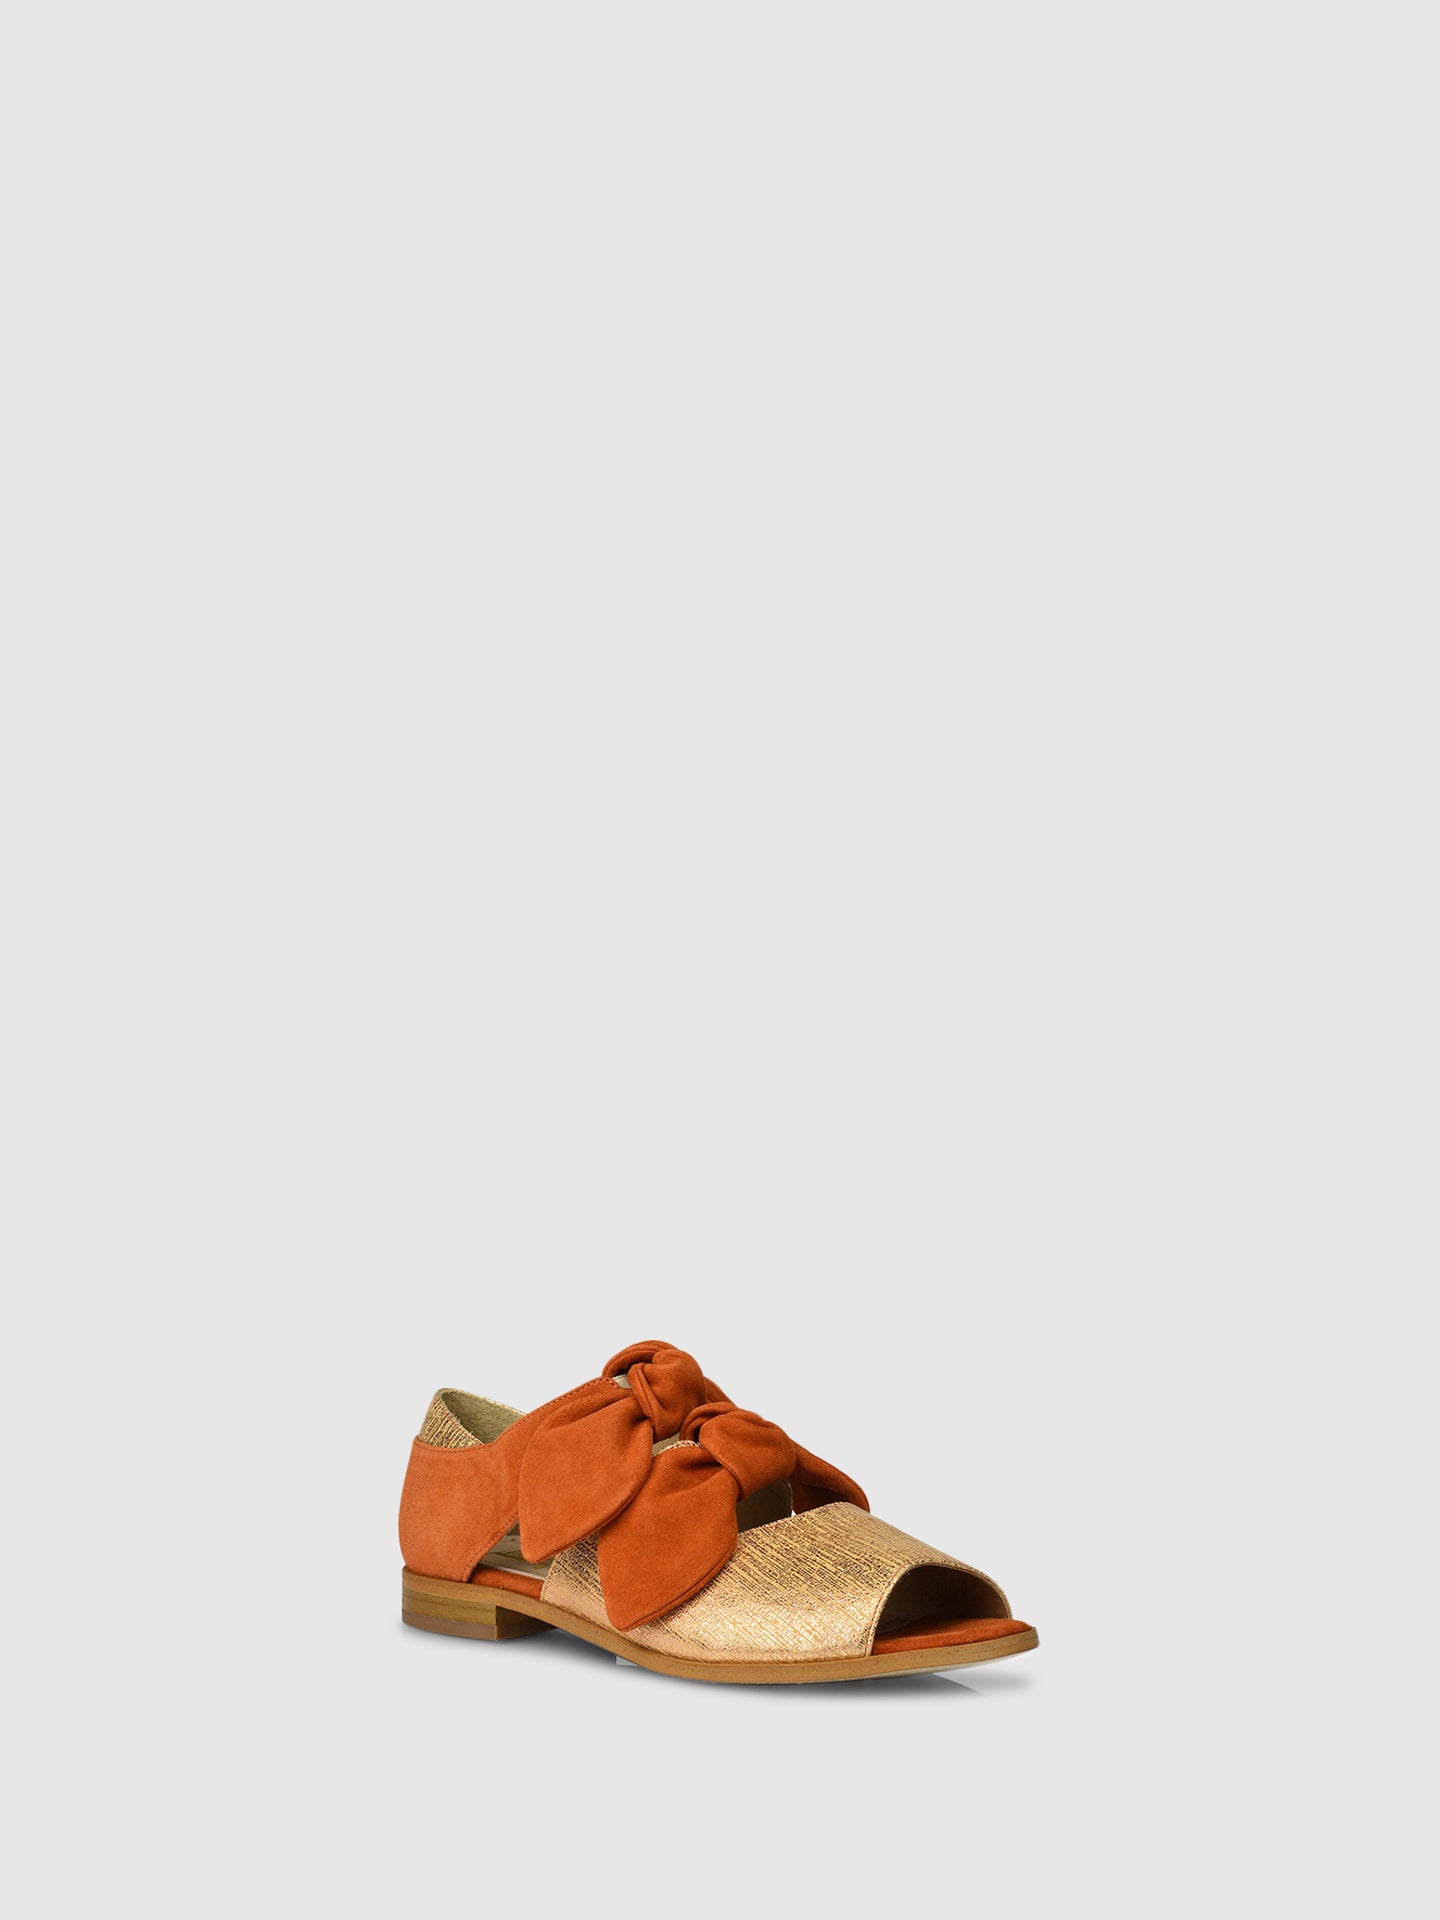 JJ Heitor Bow Sandals A03L1 Gold/Orange